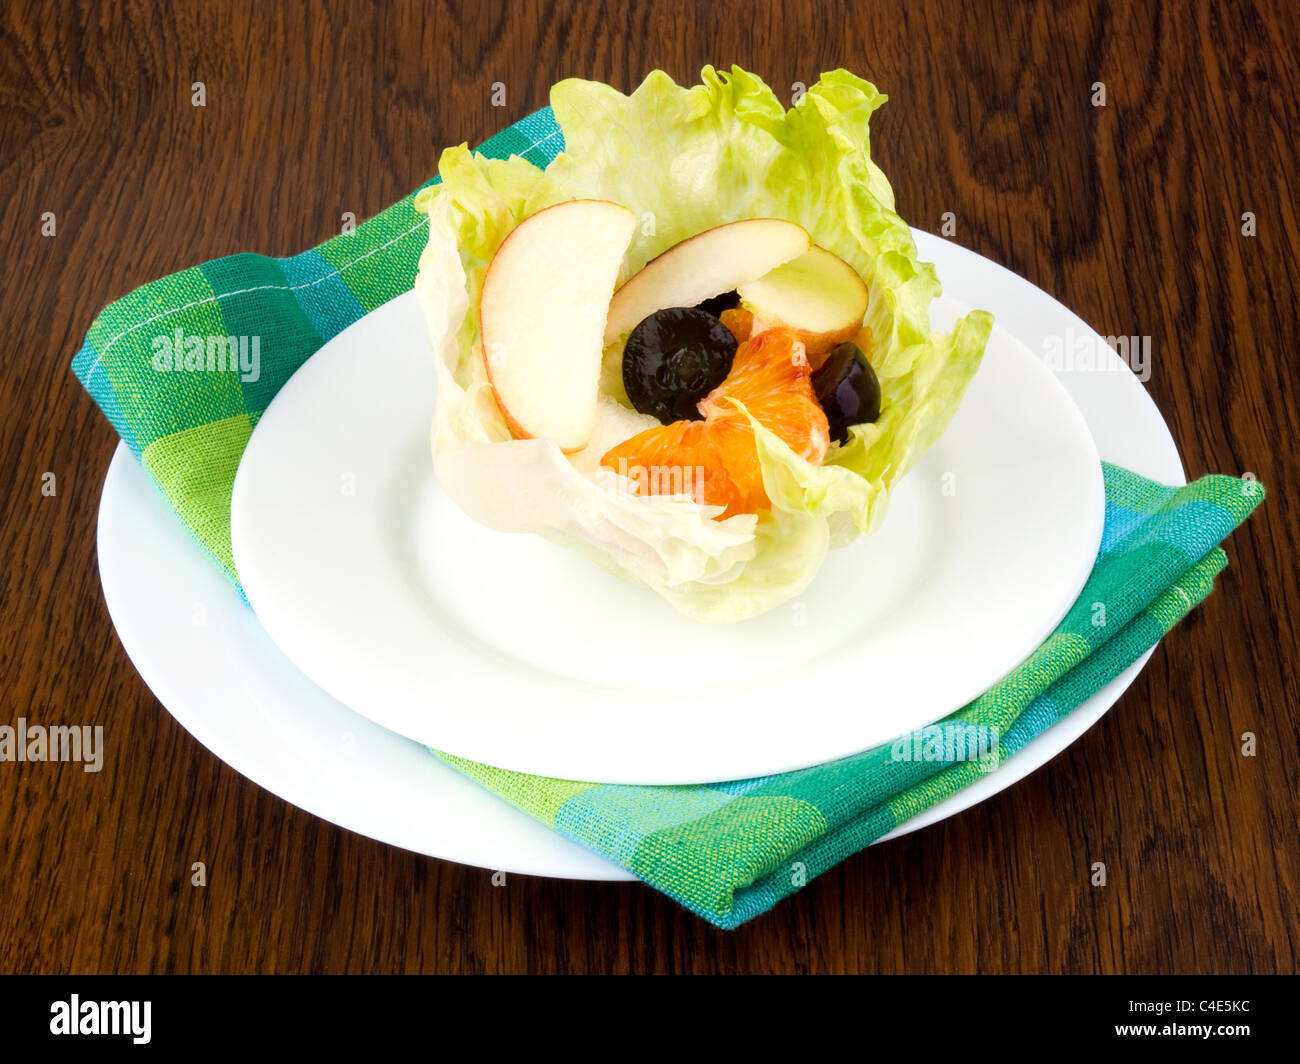 Apfel, Orange und Trauben in Eisbergsalat Blatt auf weißen Teller - Frucht-Salat geschnitten Stockfoto